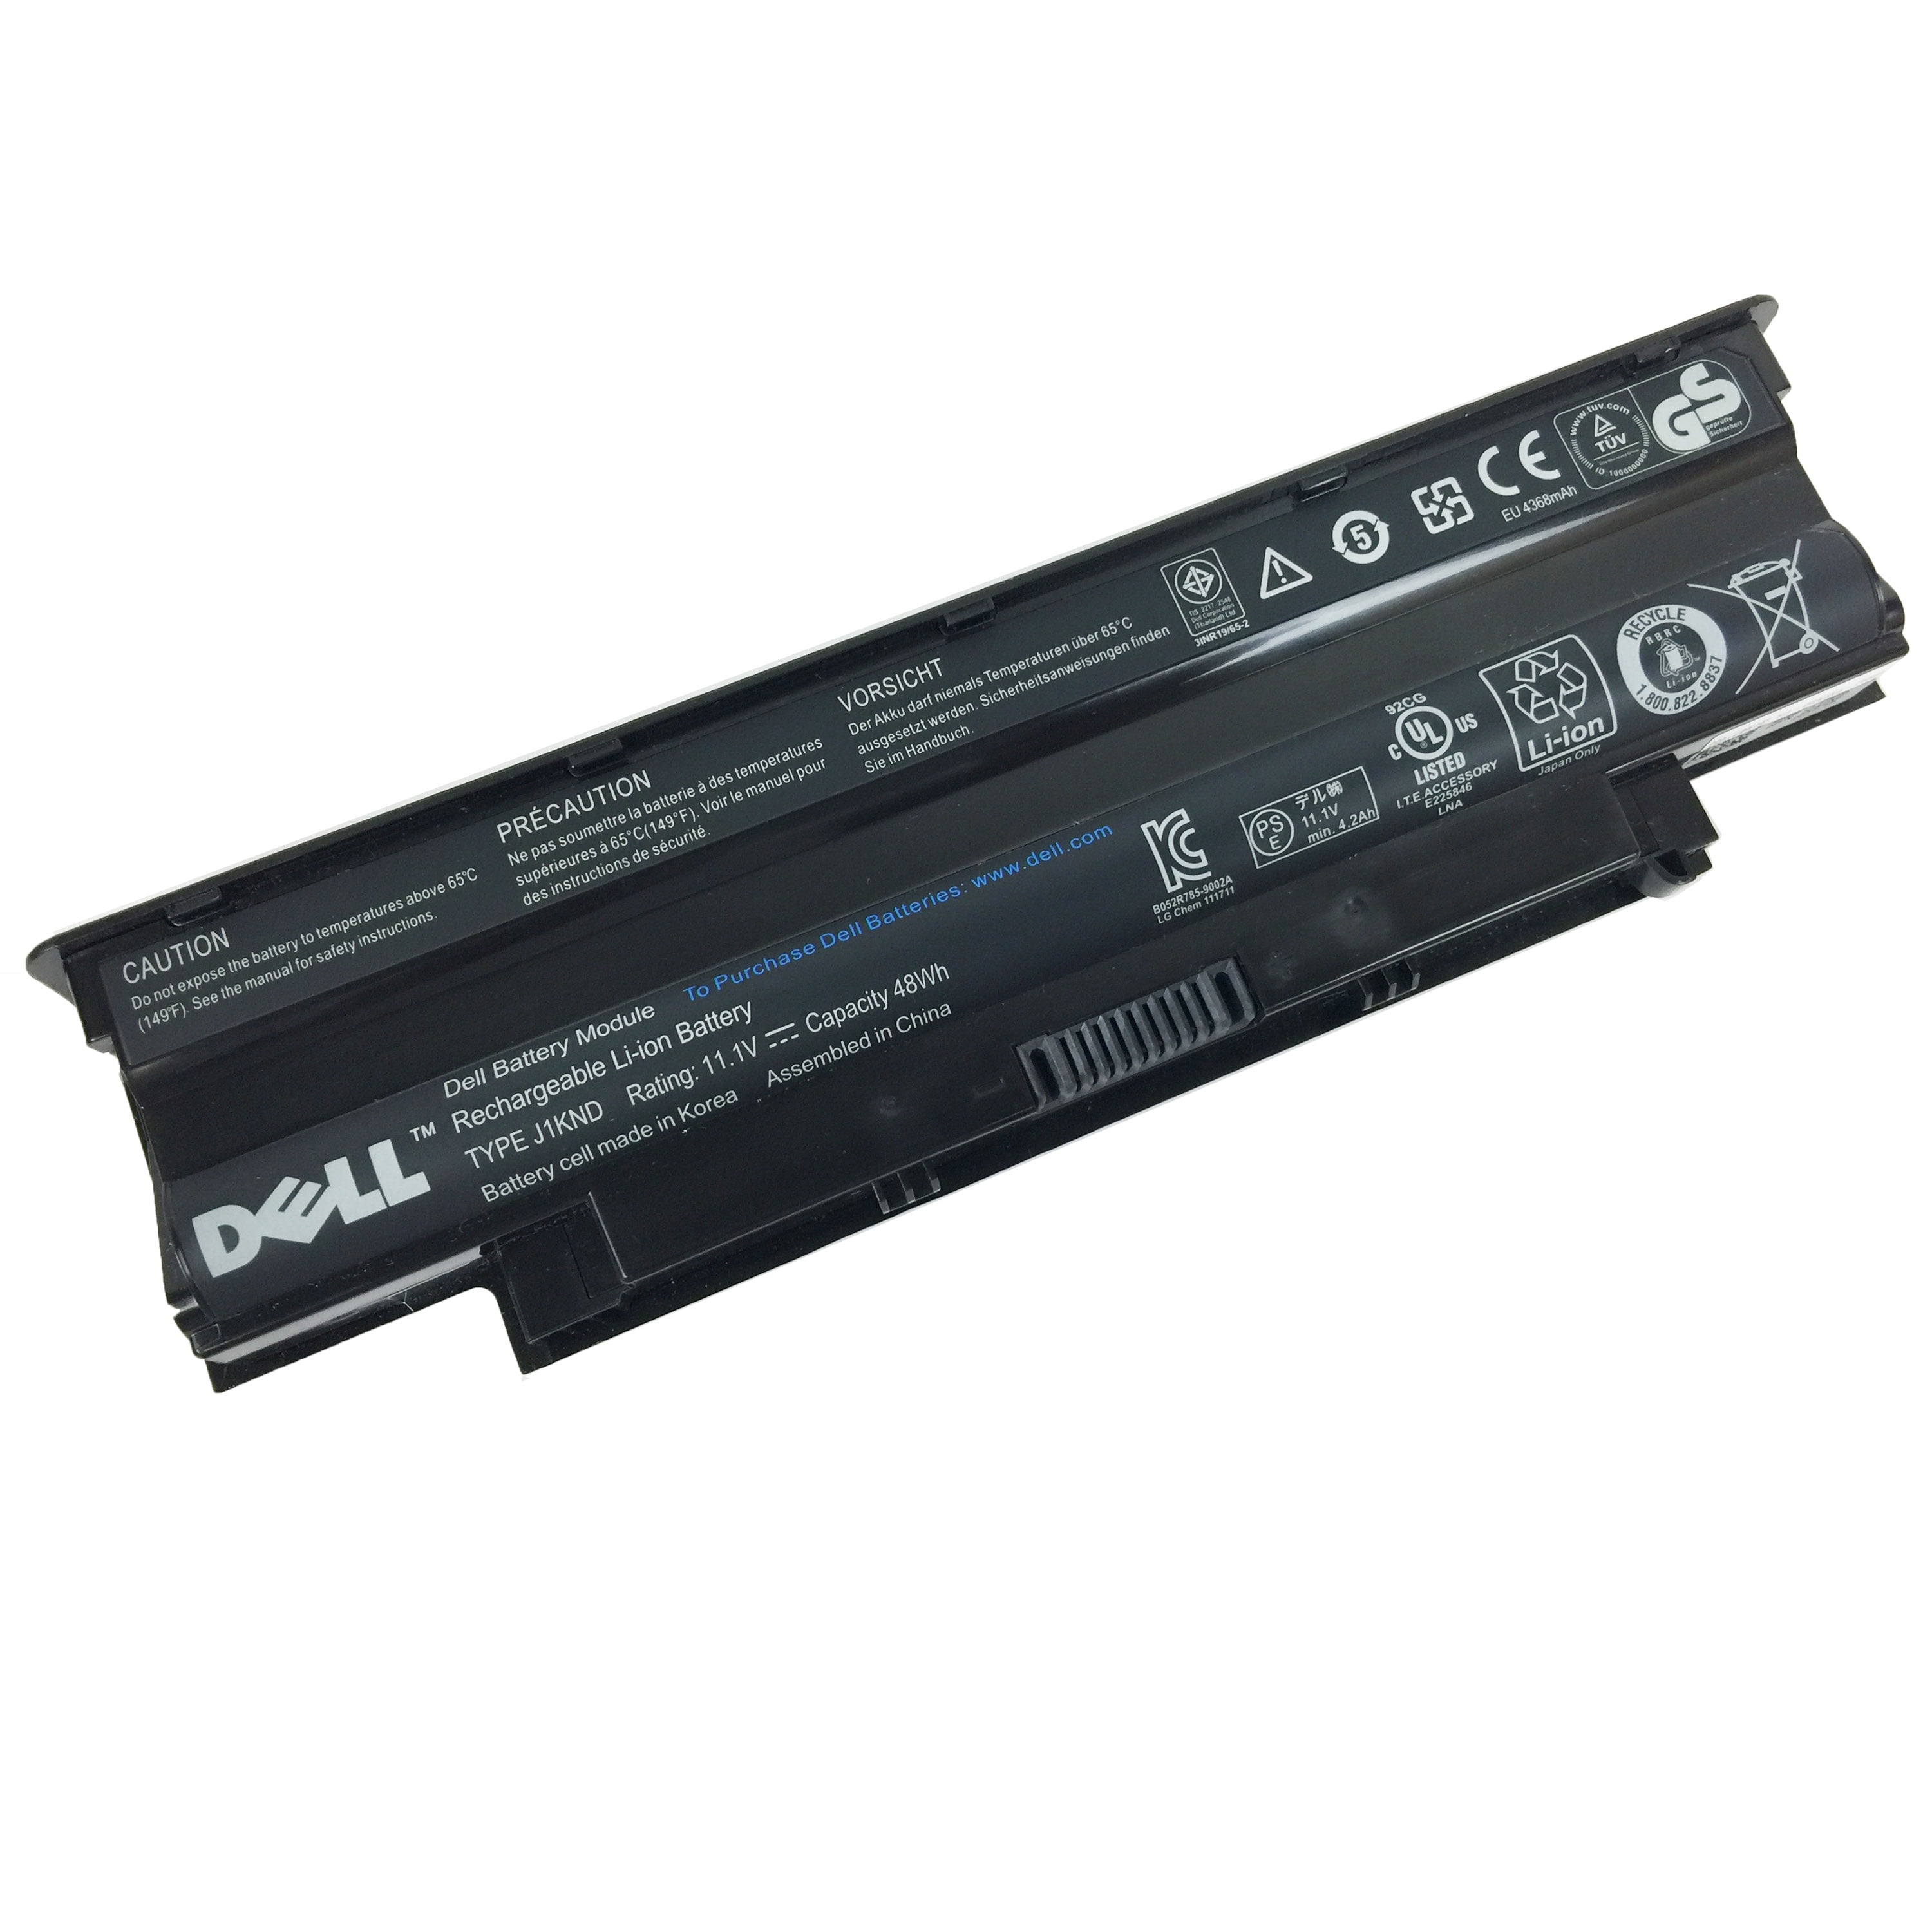 6 cell battery. Увеличенная батарея dell 7110. Dell Inspiron 17r (n7110) увеличенная батарея увеличенной емкости.